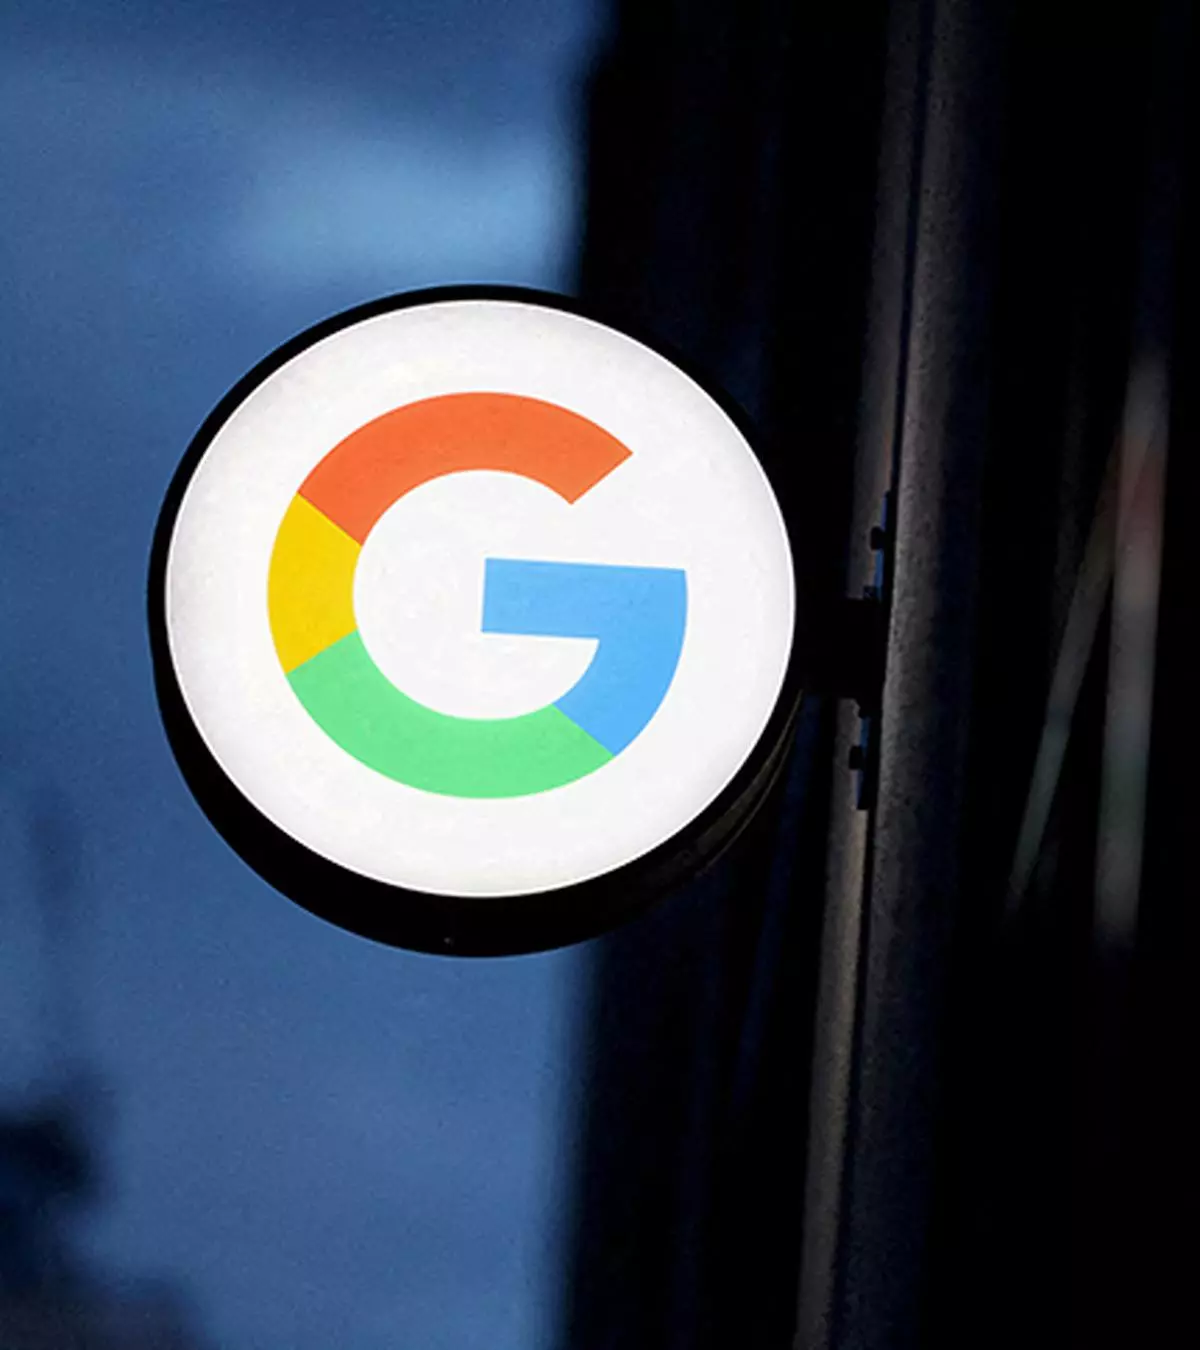 The logo for Google